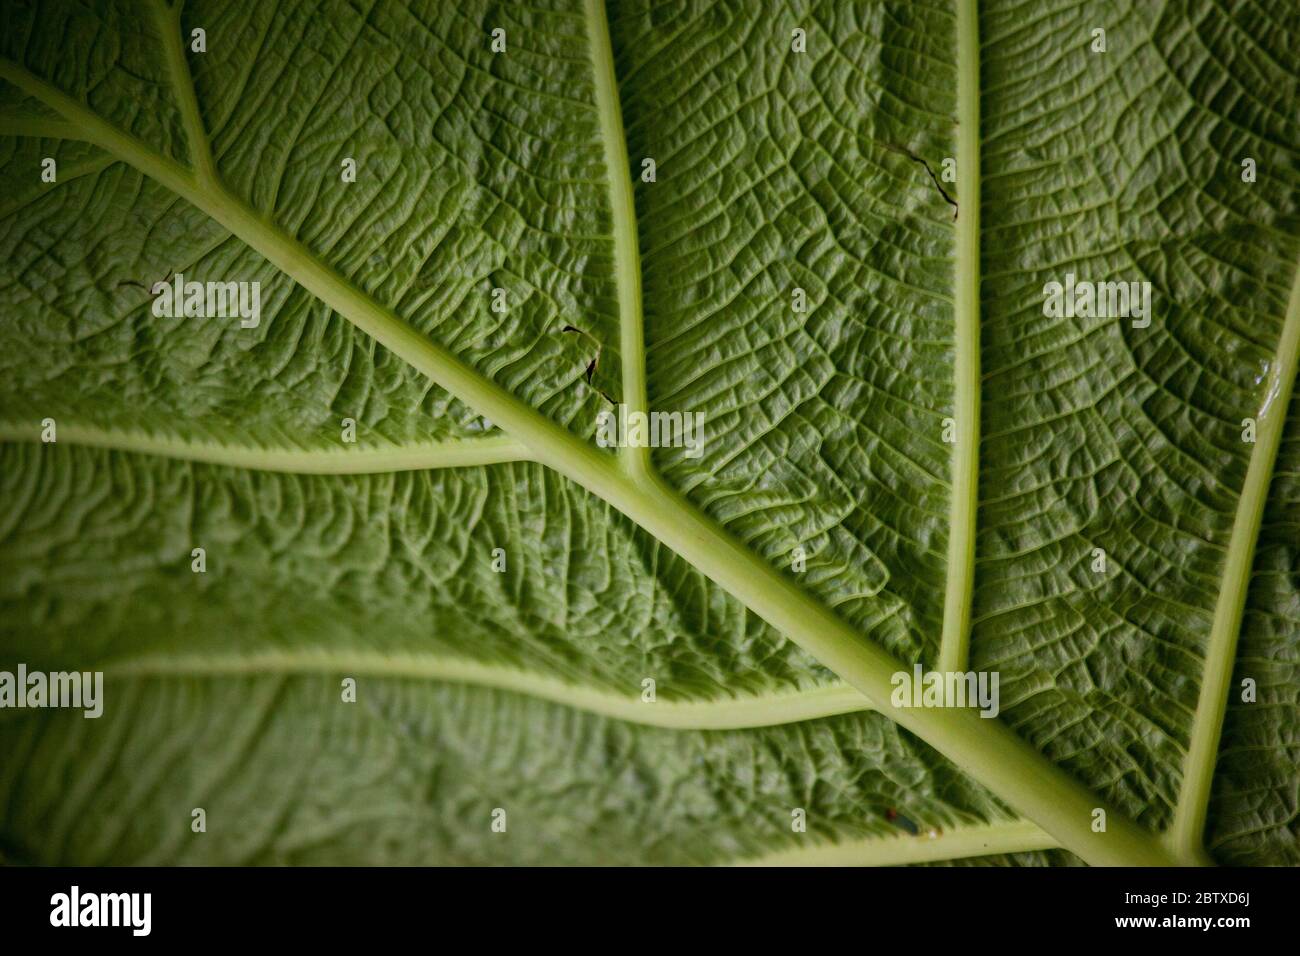 Côtes de feuilles arty sur une grande feuille dans le sous-étage de la forêt tropicale luxuriante dans le parc national de la Amistad, province de Chiriqui, République du Panama. Banque D'Images